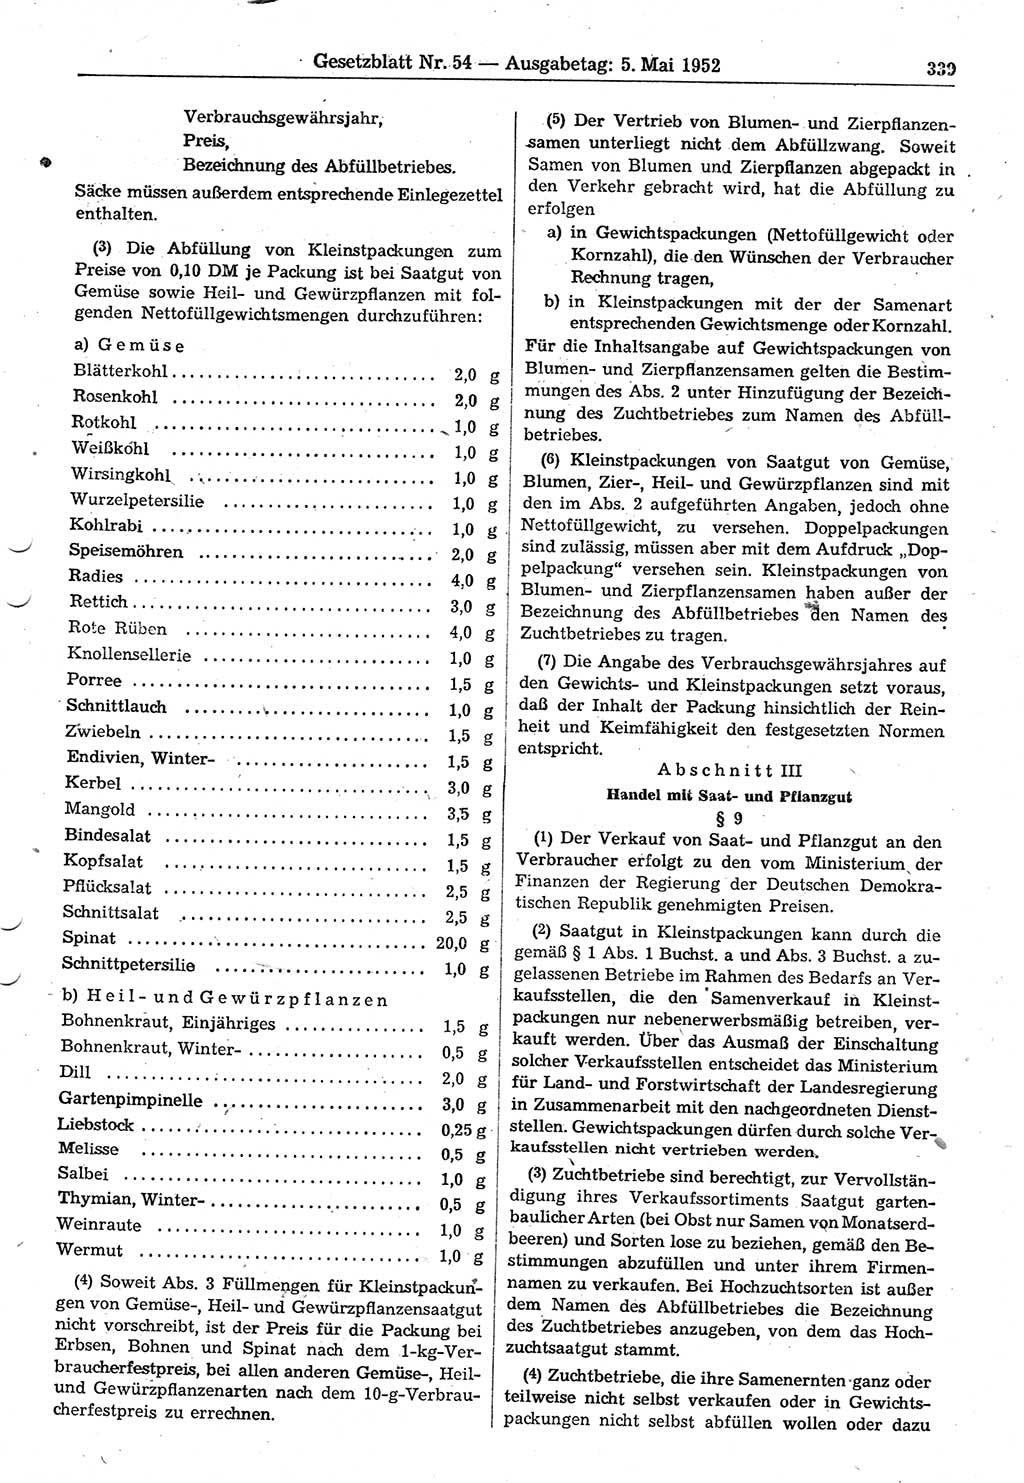 Gesetzblatt (GBl.) der Deutschen Demokratischen Republik (DDR) 1952, Seite 339 (GBl. DDR 1952, S. 339)